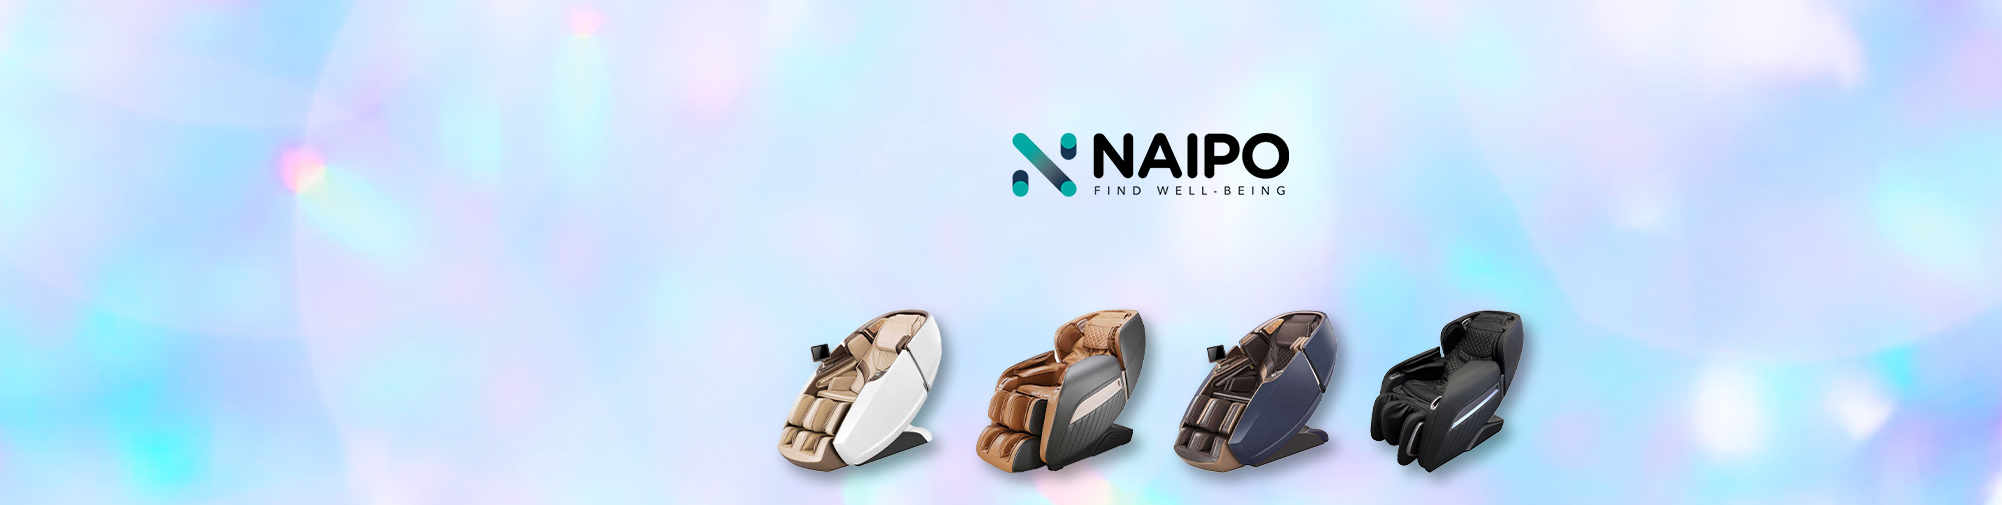 NAIPO - पूरी दुनिया के लिए मालिश उत्पाद | मालिश कुर्सी की दुनिया